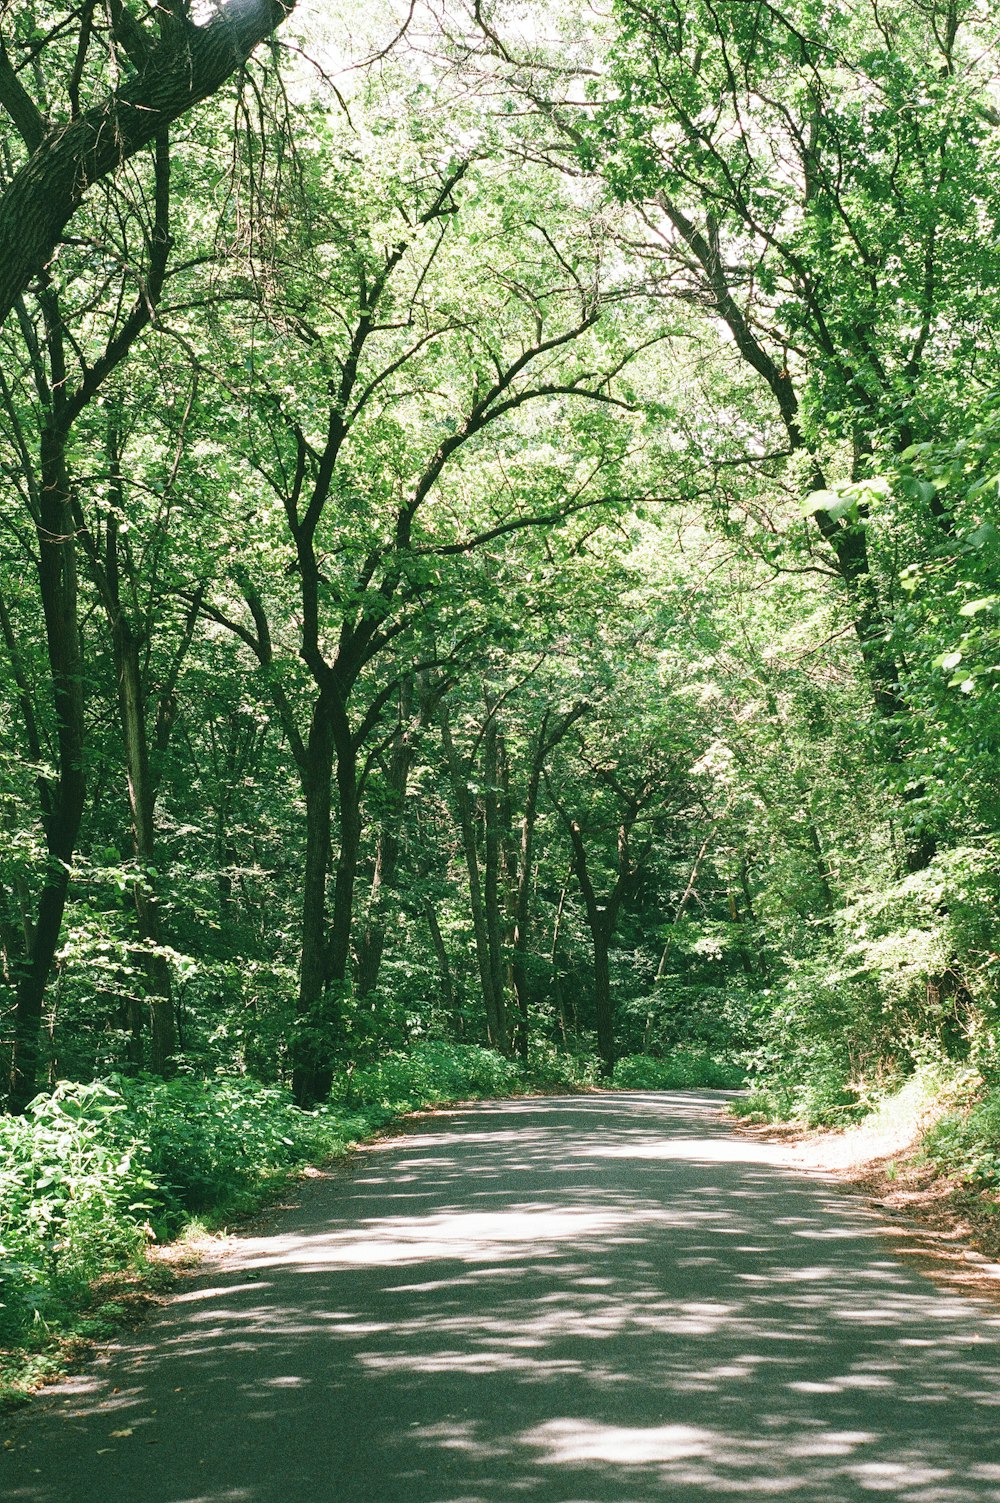 strada di cemento grigio in mezzo agli alberi verdi durante il giorno